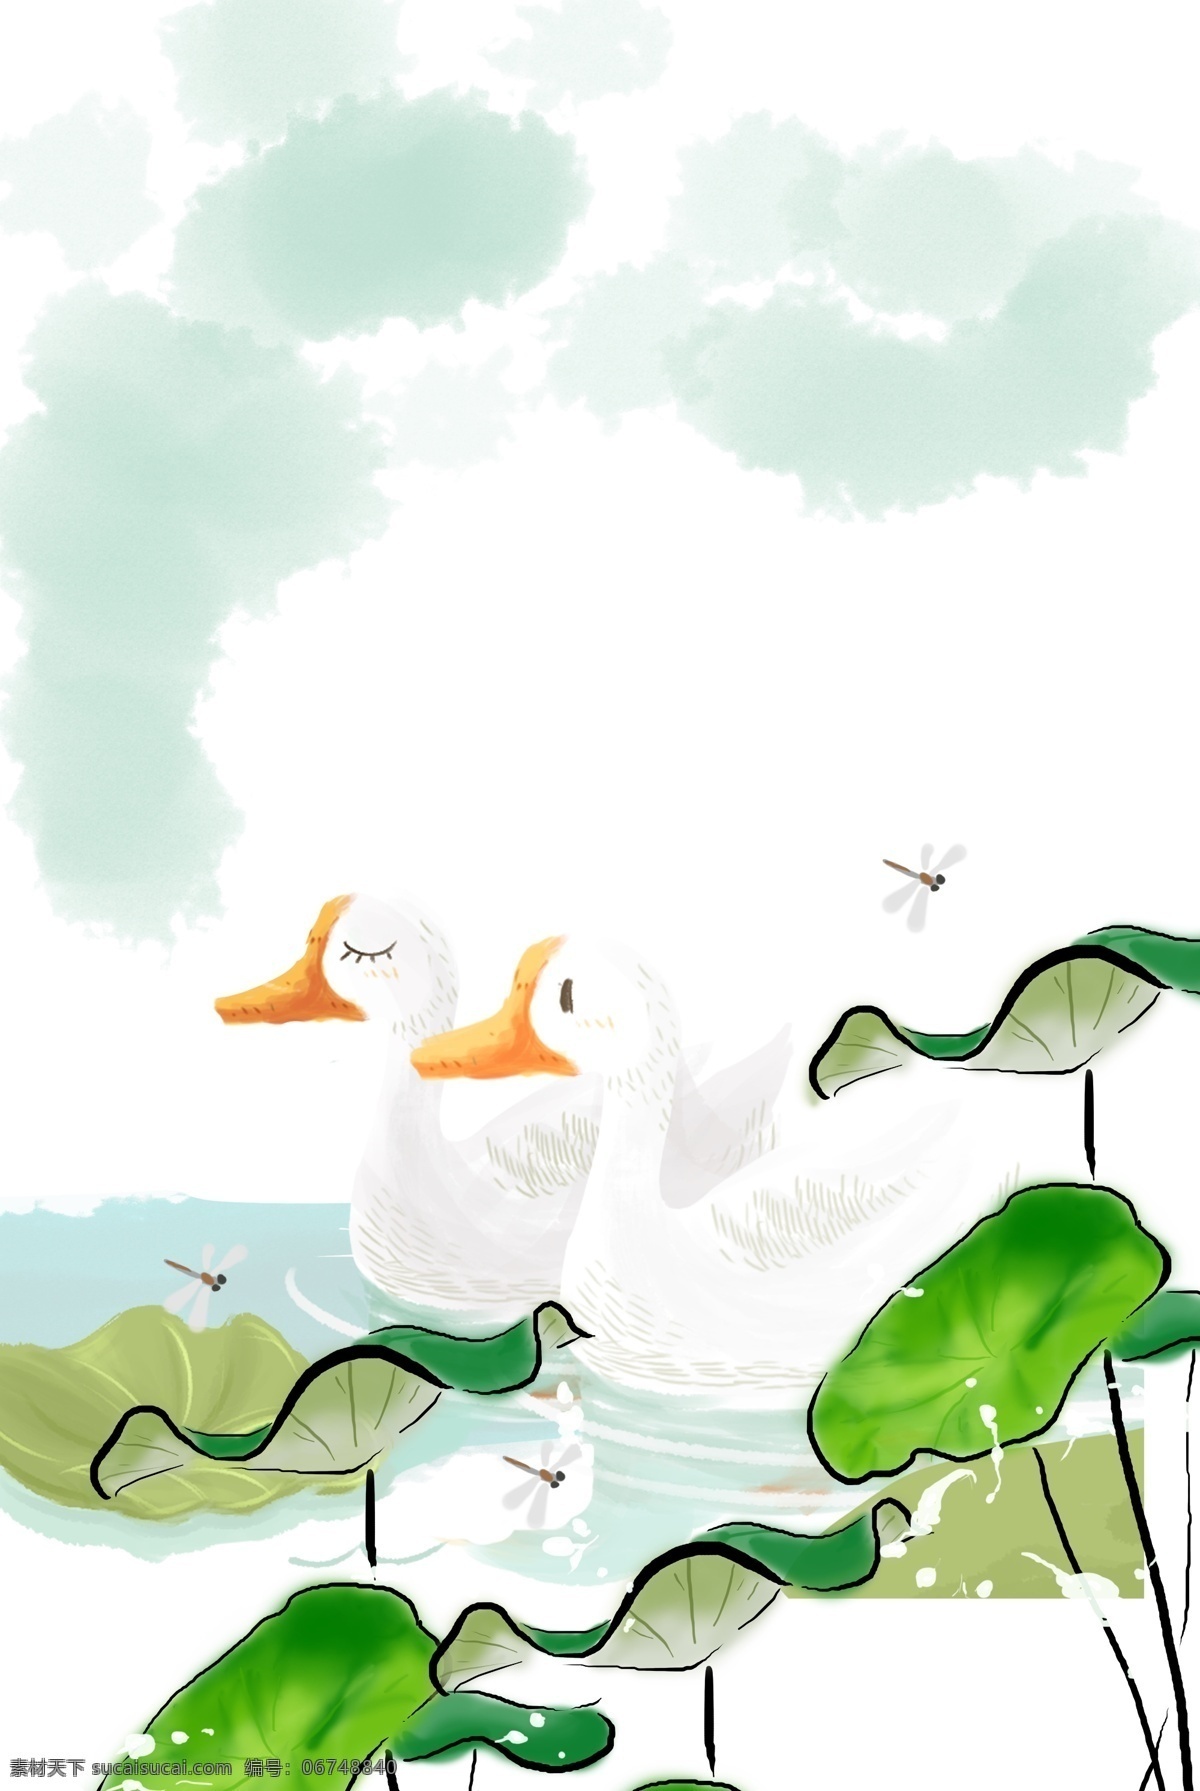 水墨 池塘背景图片 简约 清新 鸭子 荷花 质感 纹理 卡通 池塘 文艺 唯美